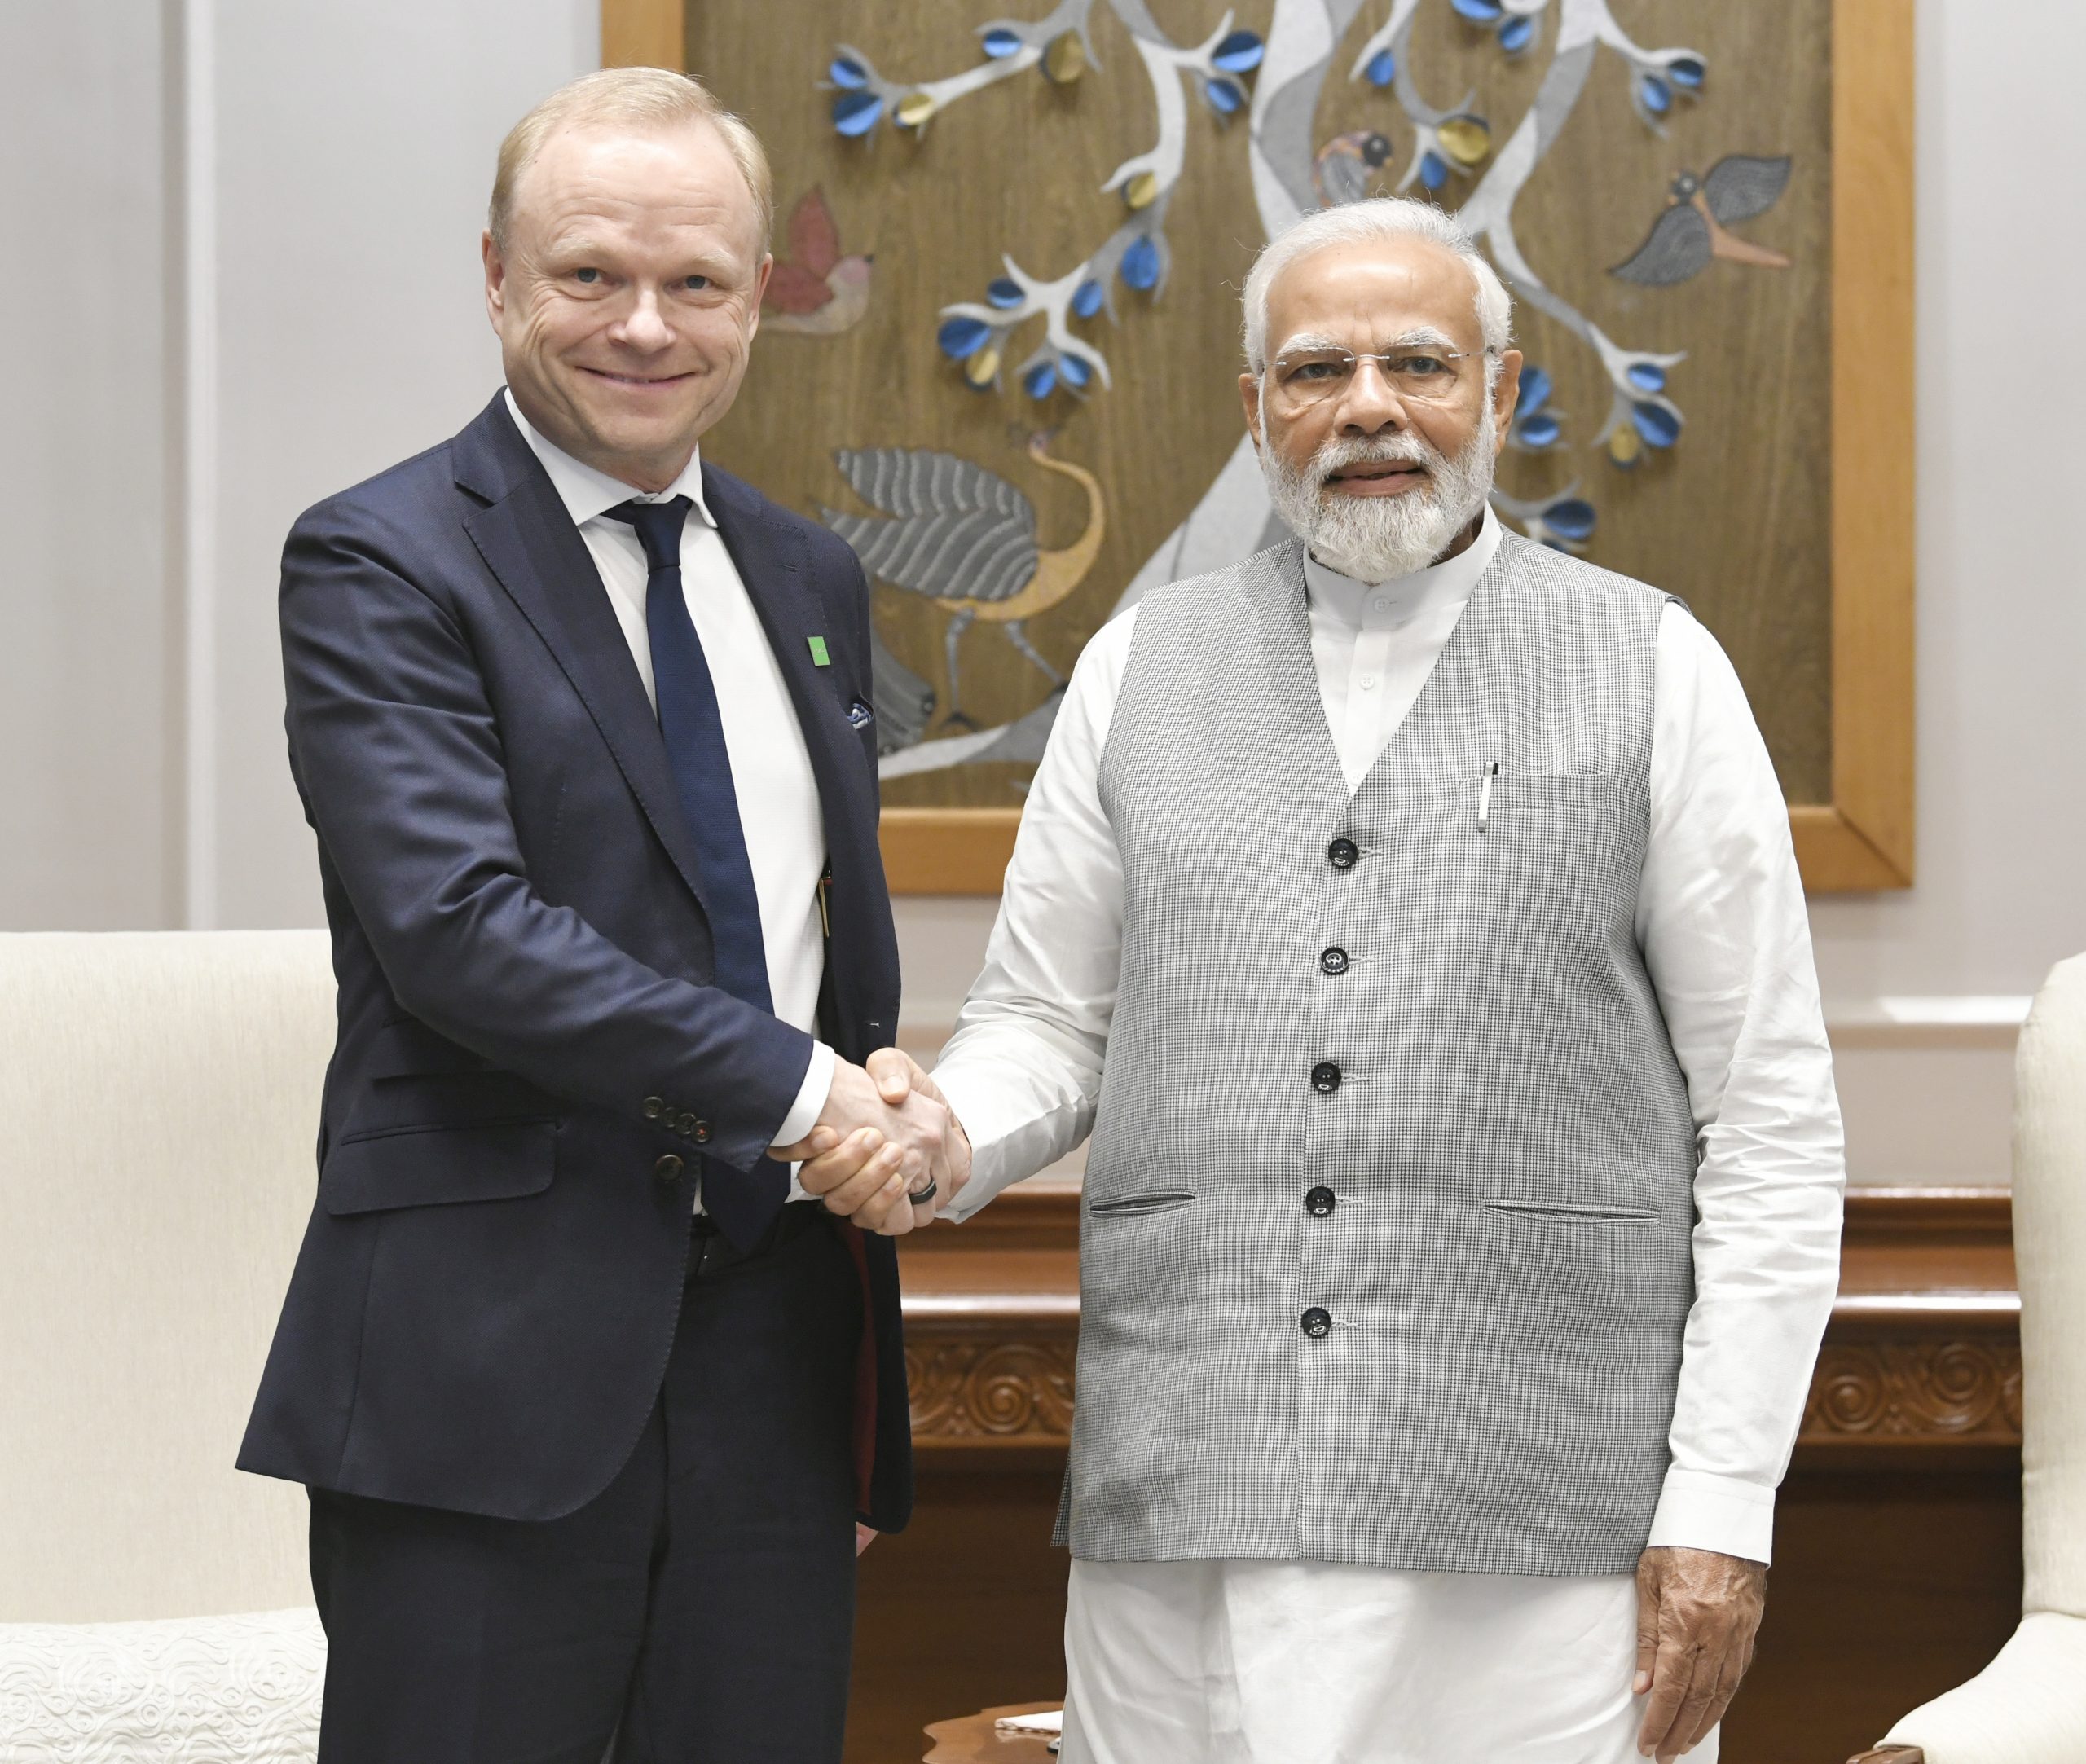 Nokia CEO meets PM Modi, discusses NextGen digital plans